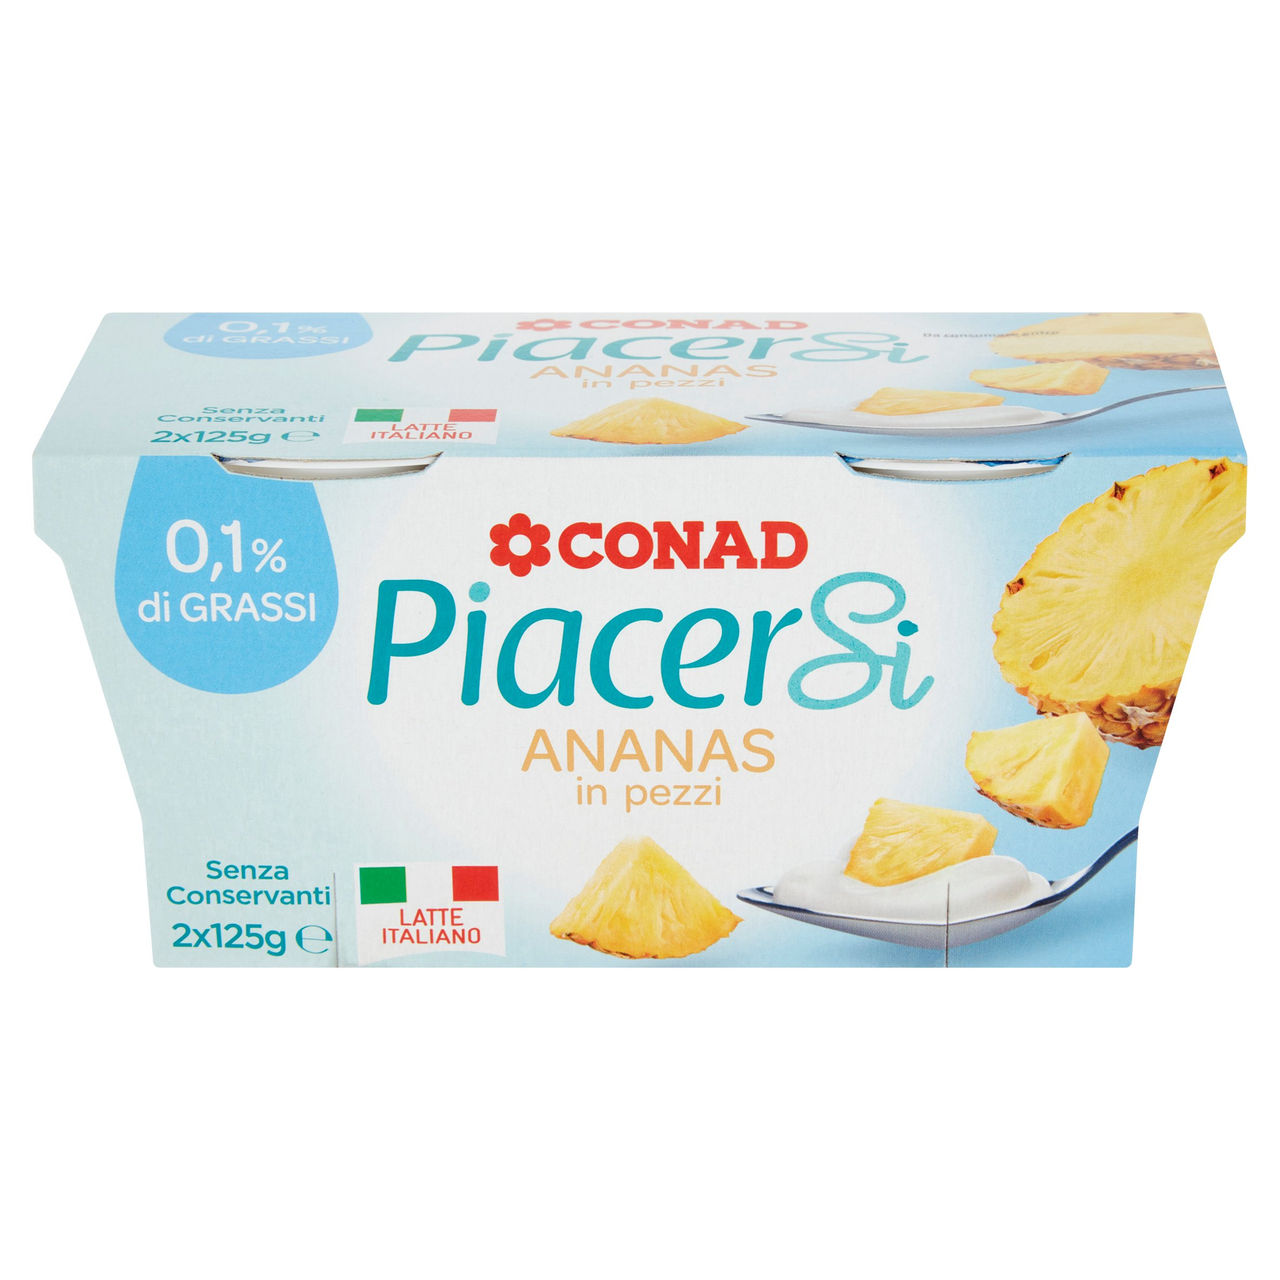 Yogurt Magro 0,1% di Grassi e Ananas Conad online